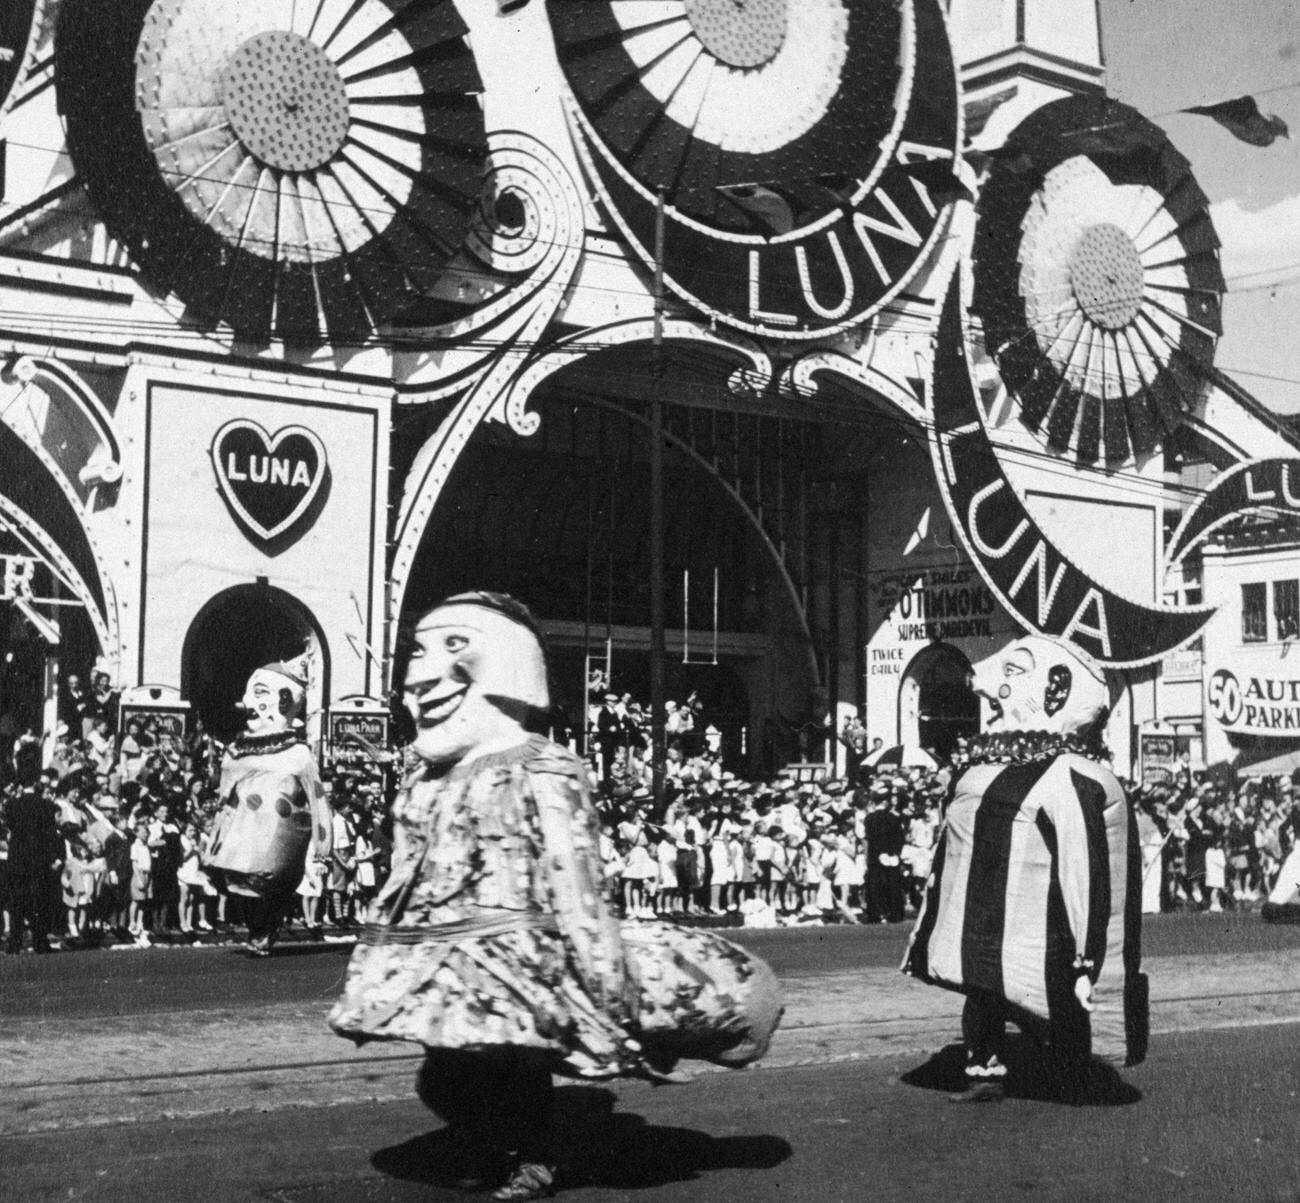 Parade At Luna Park, Coney Island, 1890